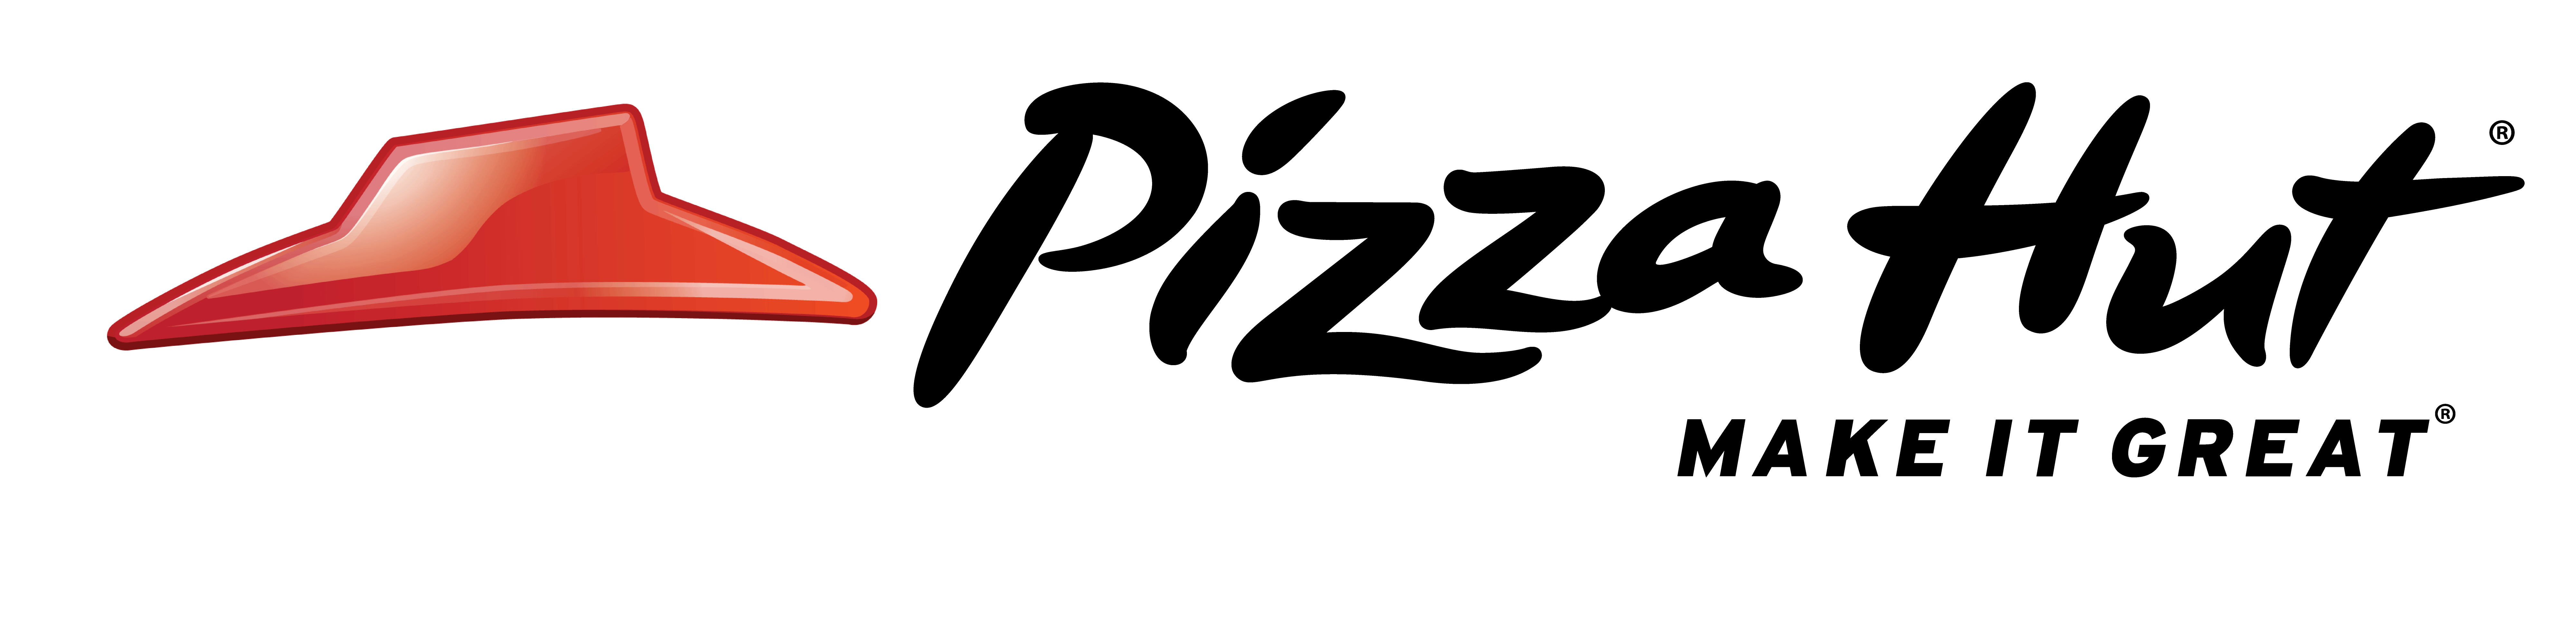 pizza hut make ıt great png logo #3813